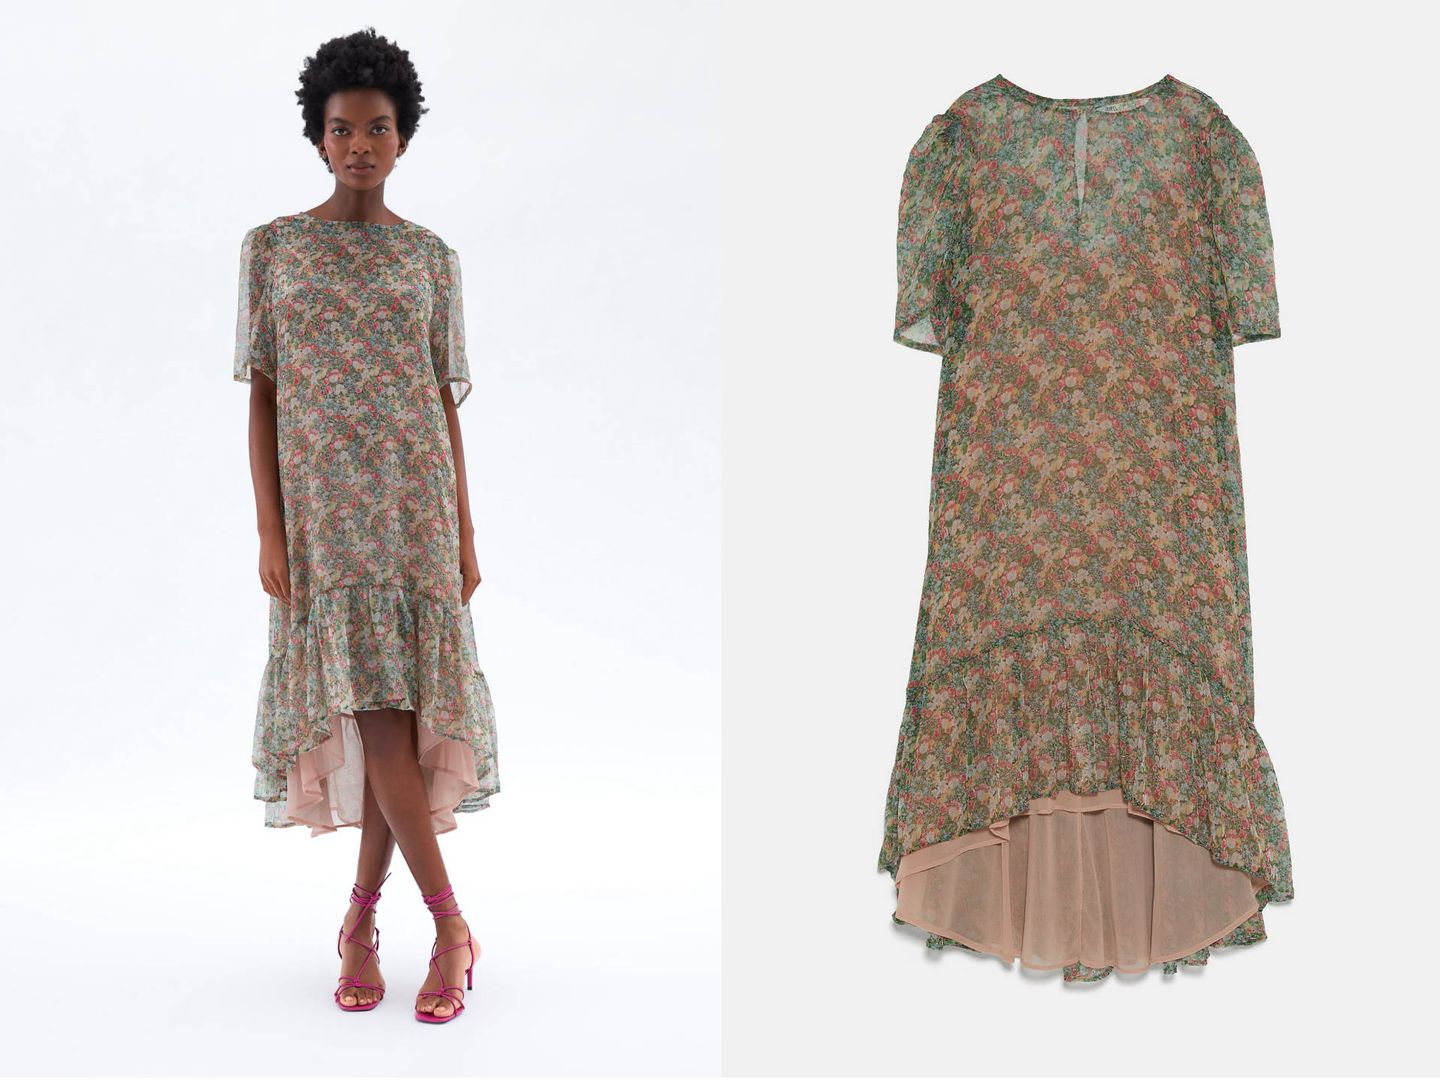 Vestido floral de Zara, colección 'Mum' (39,95€).